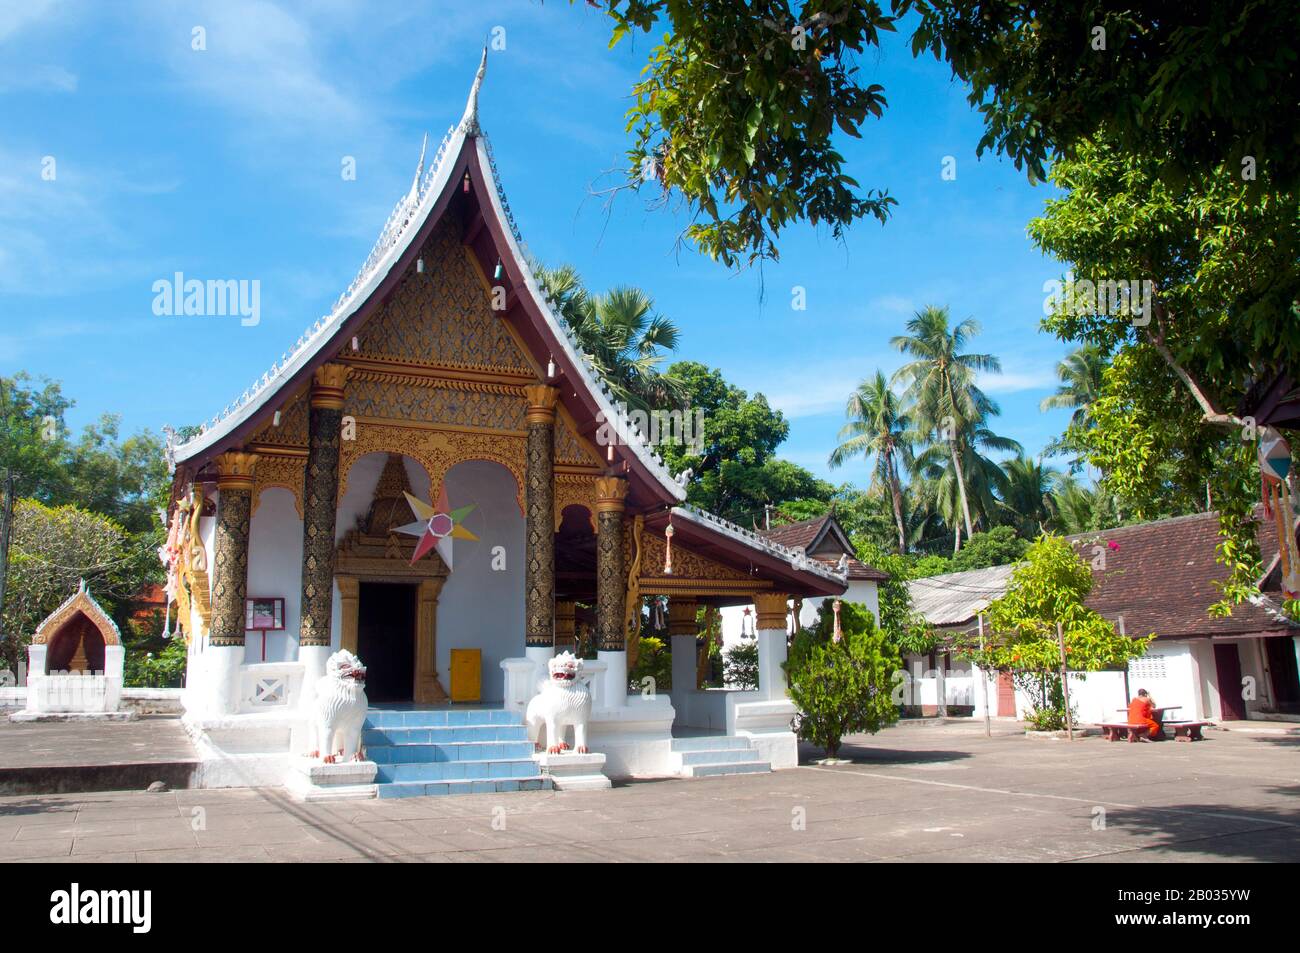 Wat Siri Mooung Khoung (Wat Si Muang Khun) ist ein buddhistischer Tempel, der im 18. Jahrhundert erbaut wurde. Luang Prabang war früher die Hauptstadt eines gleichnamigen Königreichs. Bis zur kommunistischen Machtübernahme 1975 war es die königliche Hauptstadt und Regierungssitz des Königreichs Laos. Die Stadt gehört heute zum UNESCO-Weltkulturerbe. Stockfoto